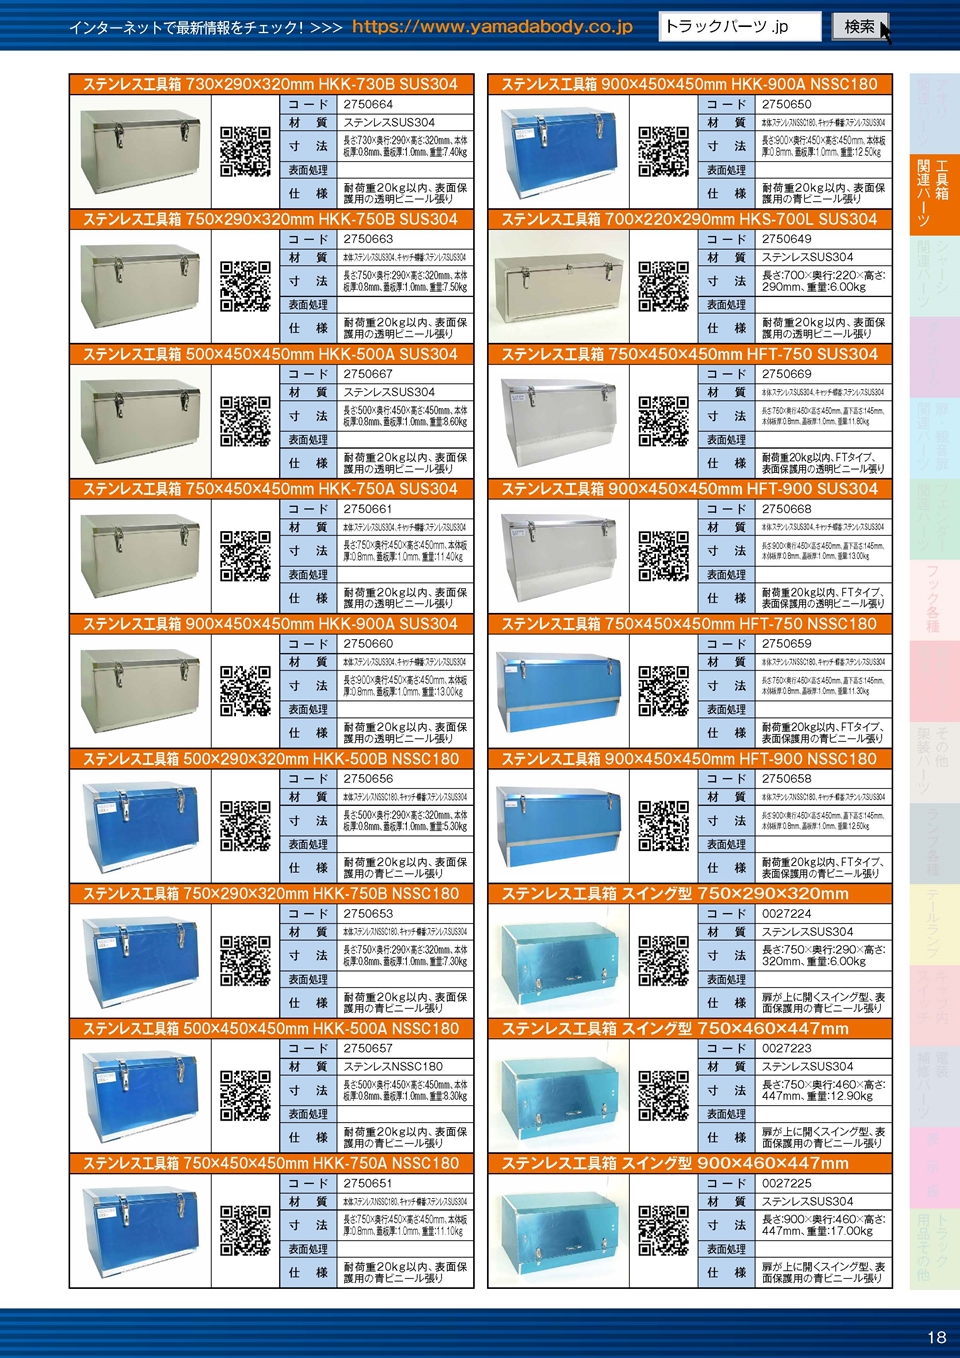 ヤマダボディーワークス カタログ2022 業務用PDF版のステンレス工具箱のサンプル画像